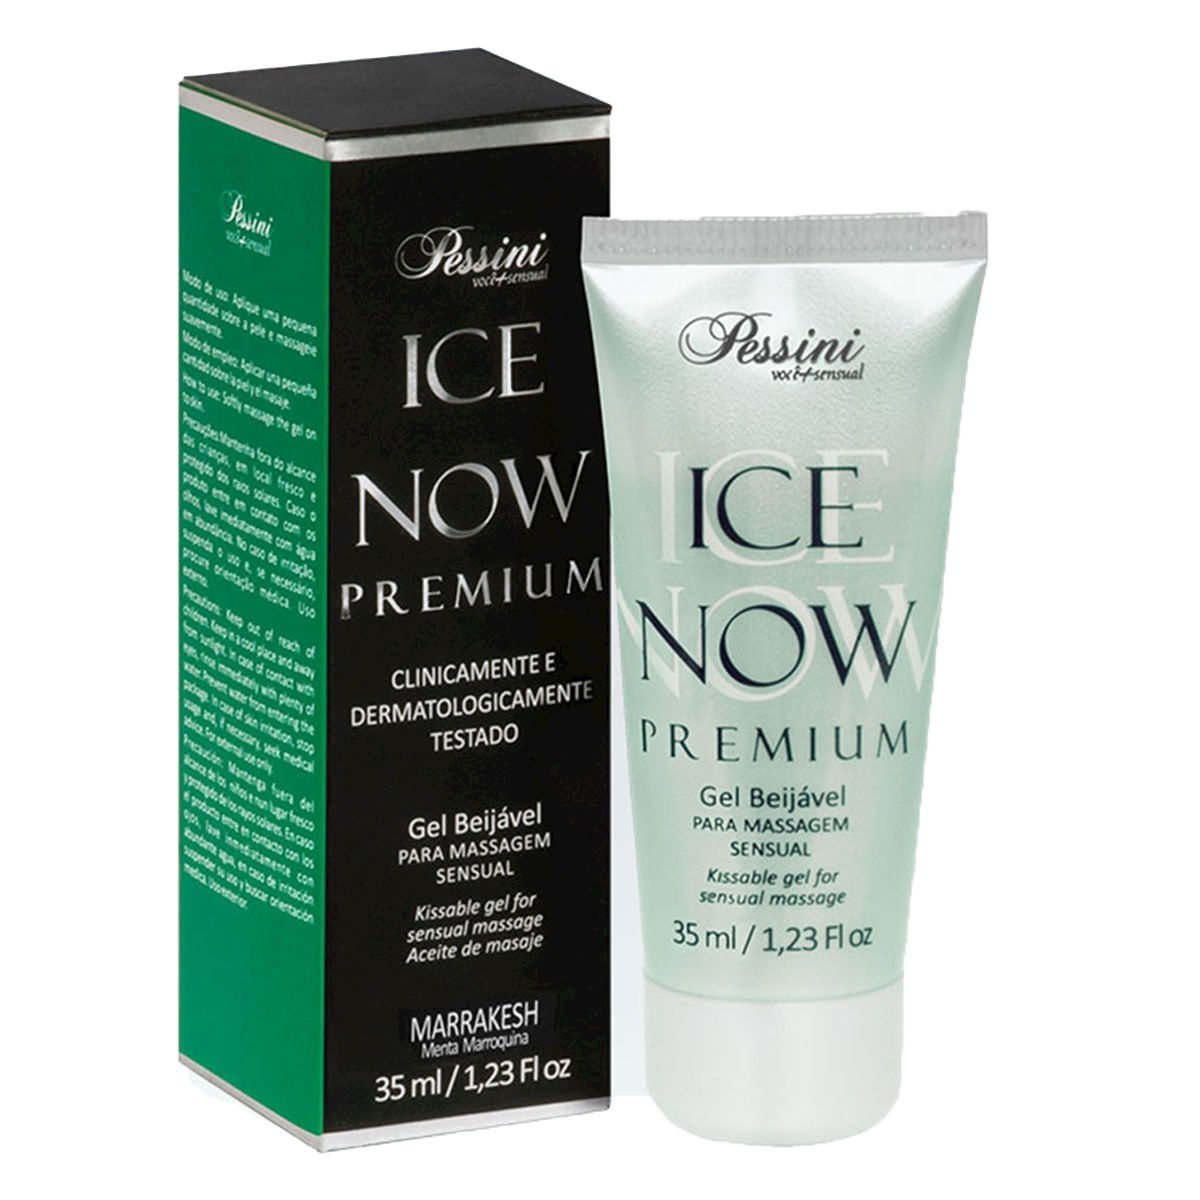 Ice Now Premium Marrakesh 35ml Pessini